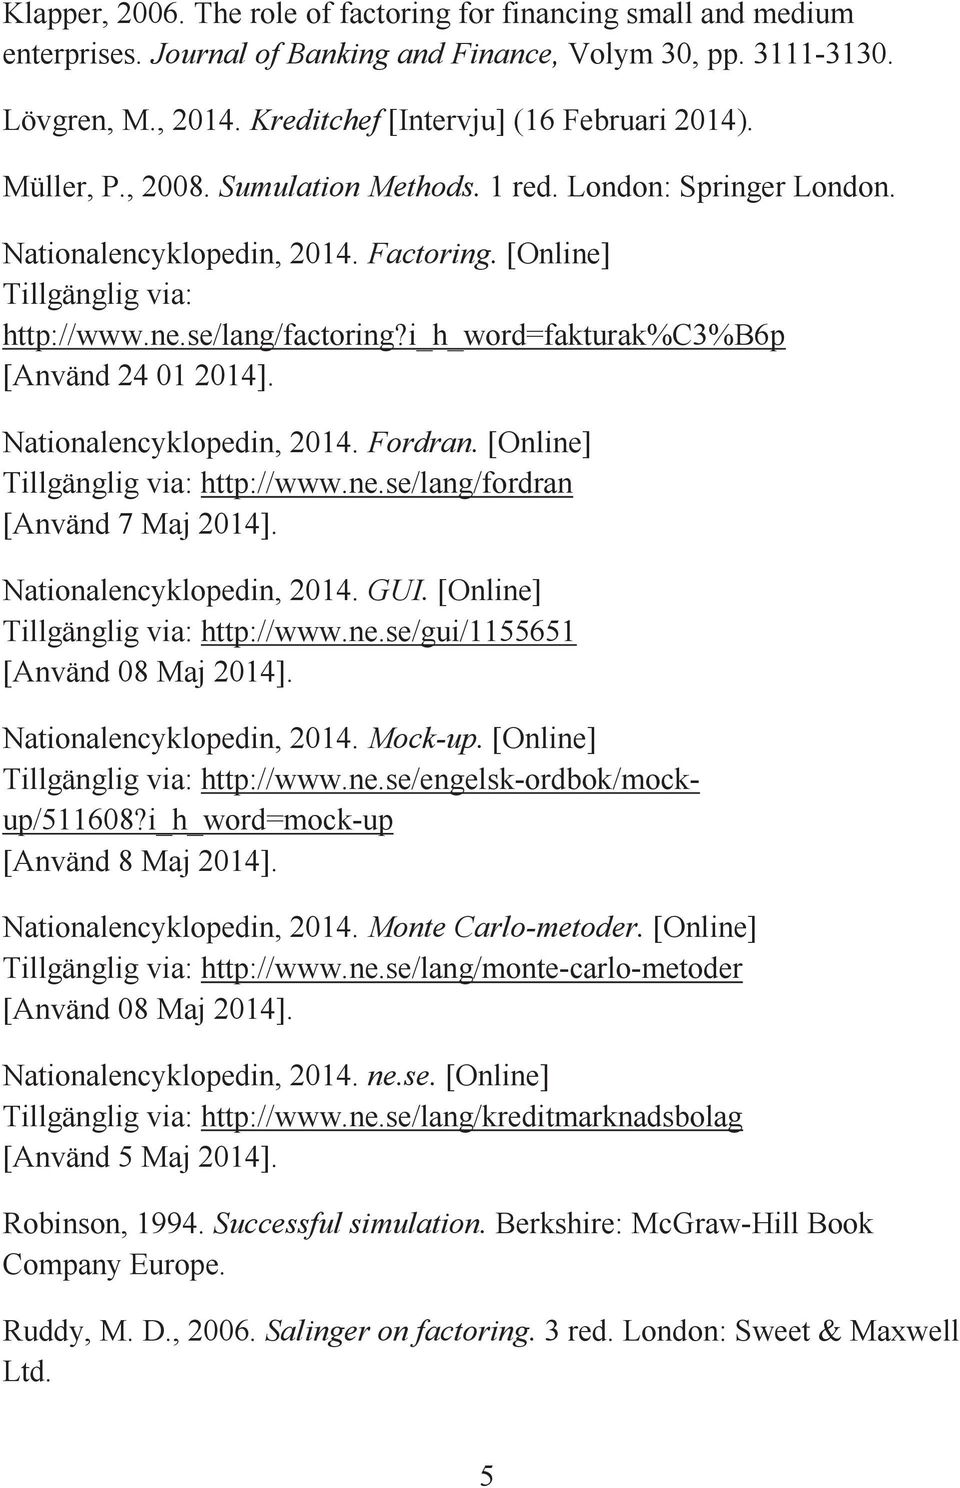 i_h_word=fakturak%c3%b6p [Använd 24 01 2014]. Nationalencyklopedin, 2014. Fordran. [Online] Tillgänglig via: http://www.ne.se/lang/fordran [Använd 7 Maj 2014]. Nationalencyklopedin, 2014. GUI.